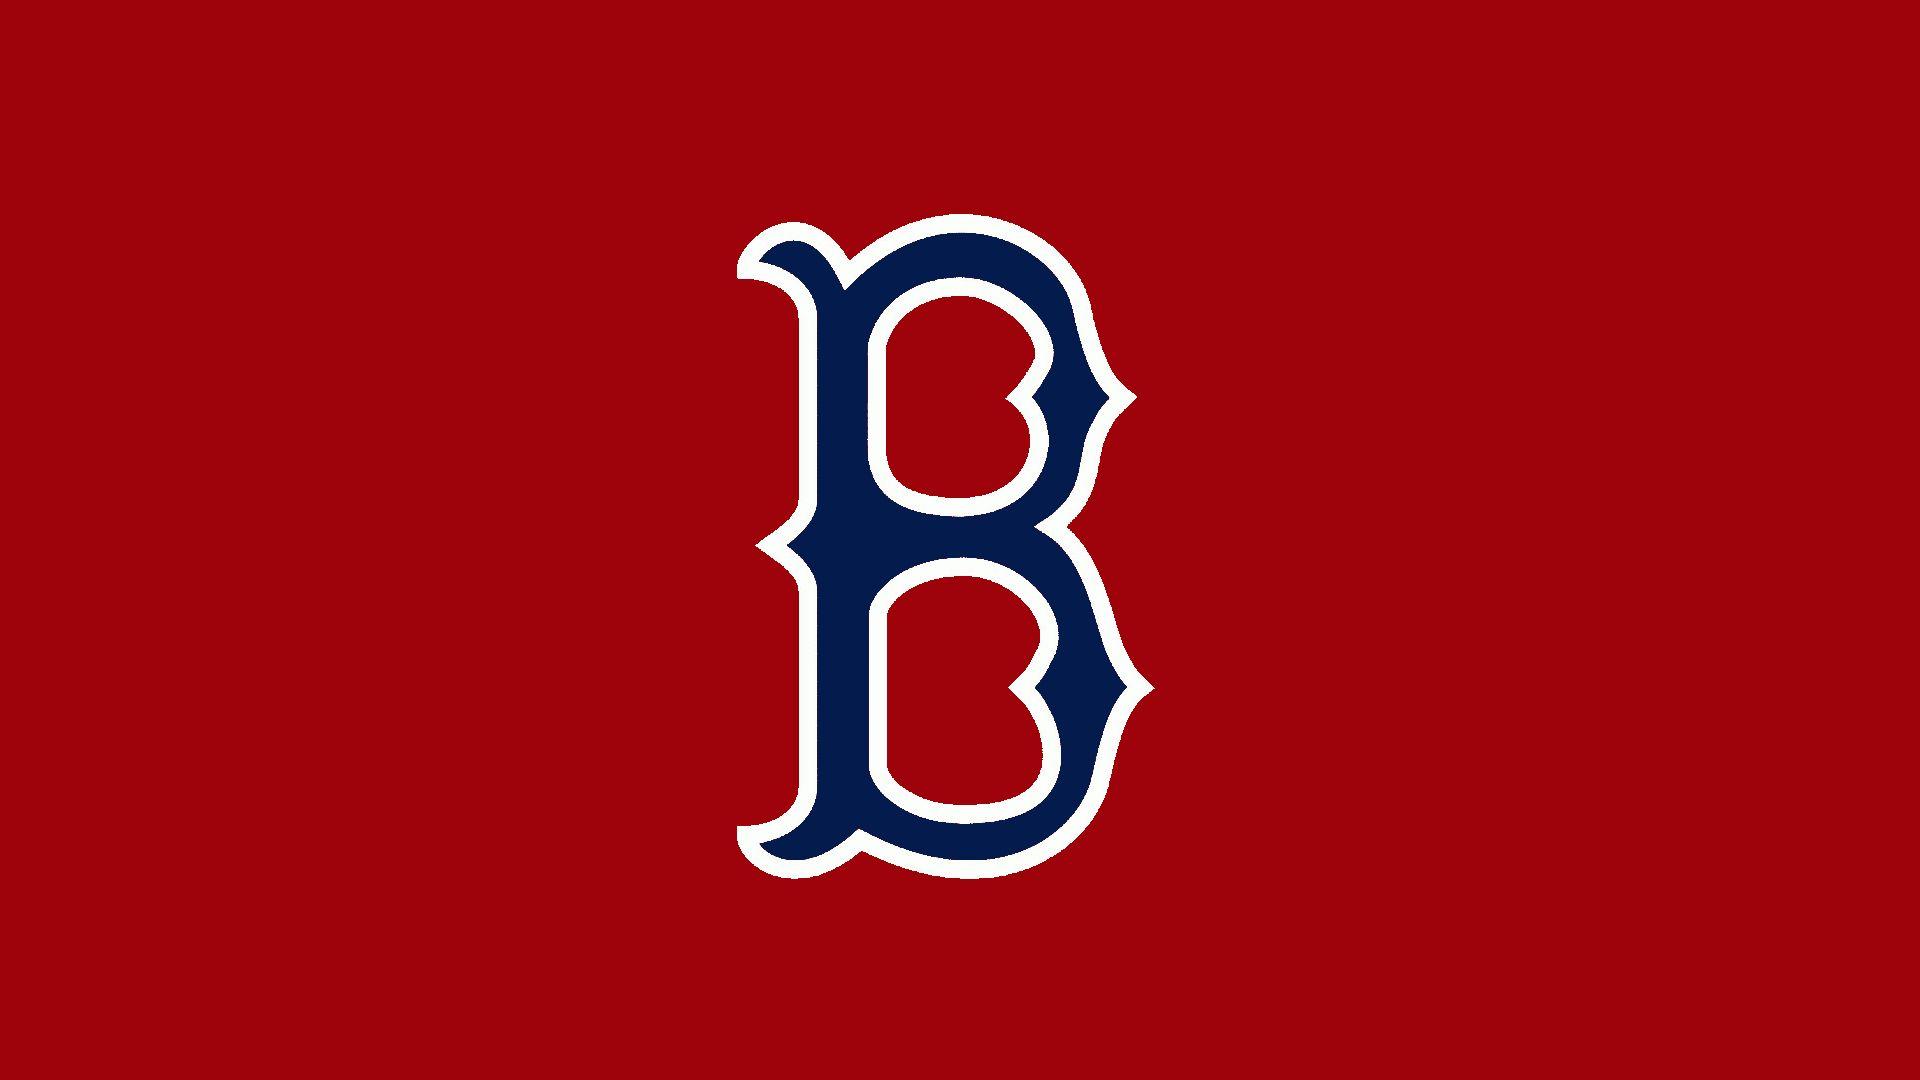 Boston Red Sox Wallpaper. HD Wallpaper Base